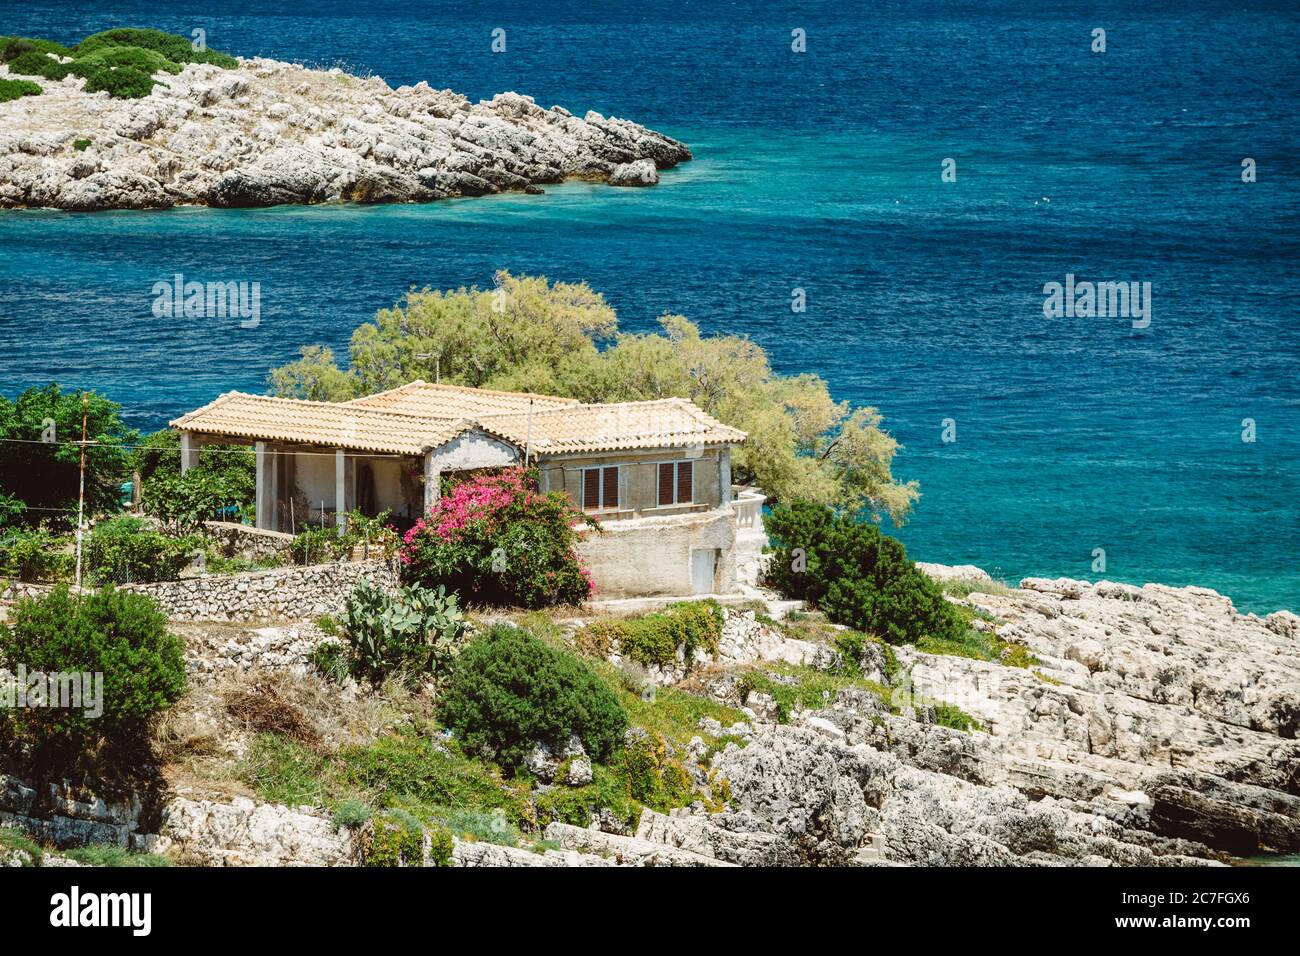 Maison en pierre sur le rivage de la mer Ionienne bleue sur la côte de l'île de Zakynthos avec des fleurs roses à l'avant pendant la journée ensoleillée d'été Banque D'Images